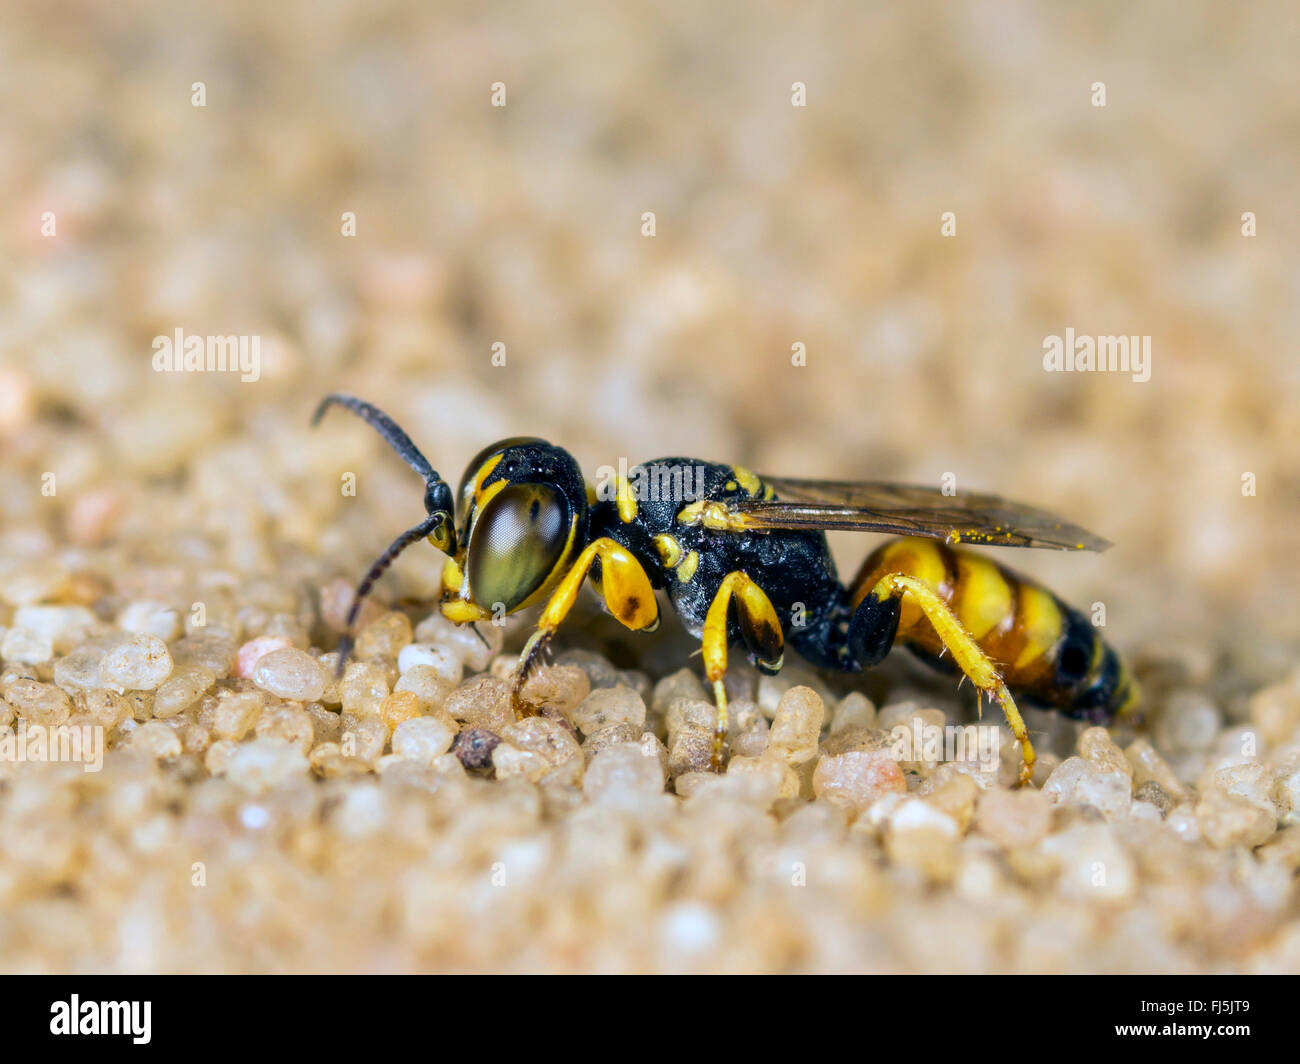 Digger wasp (Dinetus pictus), homme assis sur le sable, Allemagne Banque D'Images